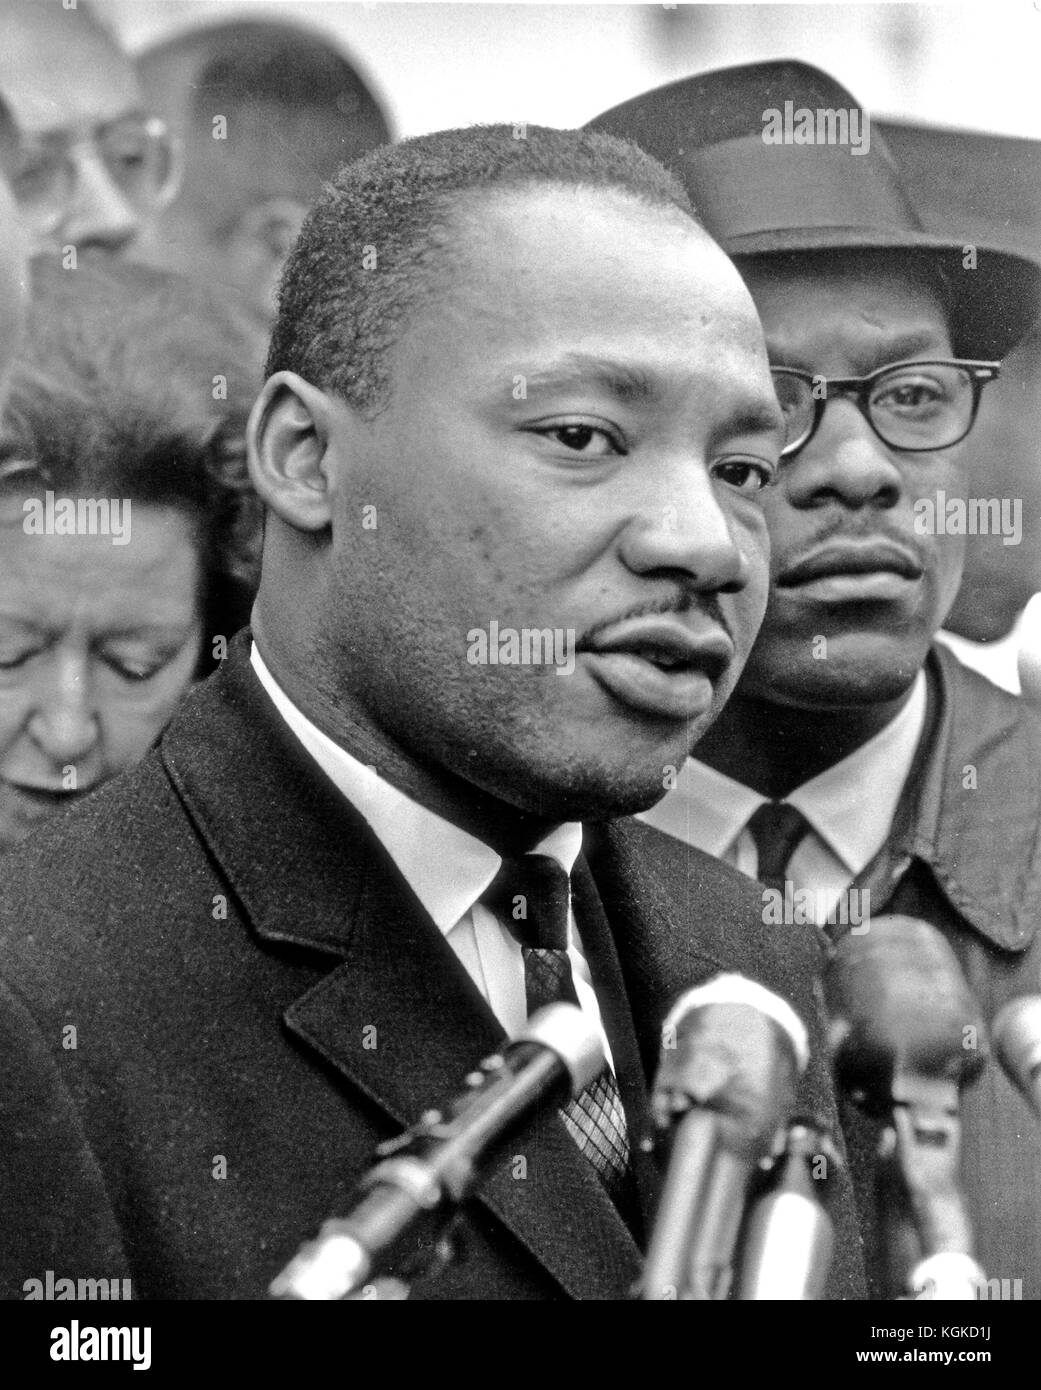 Washington, DC - (AKTE) - Dr. Martin Luther King, Jr. spricht nach einem Treffen im Weißen Haus um 1963 mit Reportern..Credit: ArnieSachs/MediaPunch Stockfoto